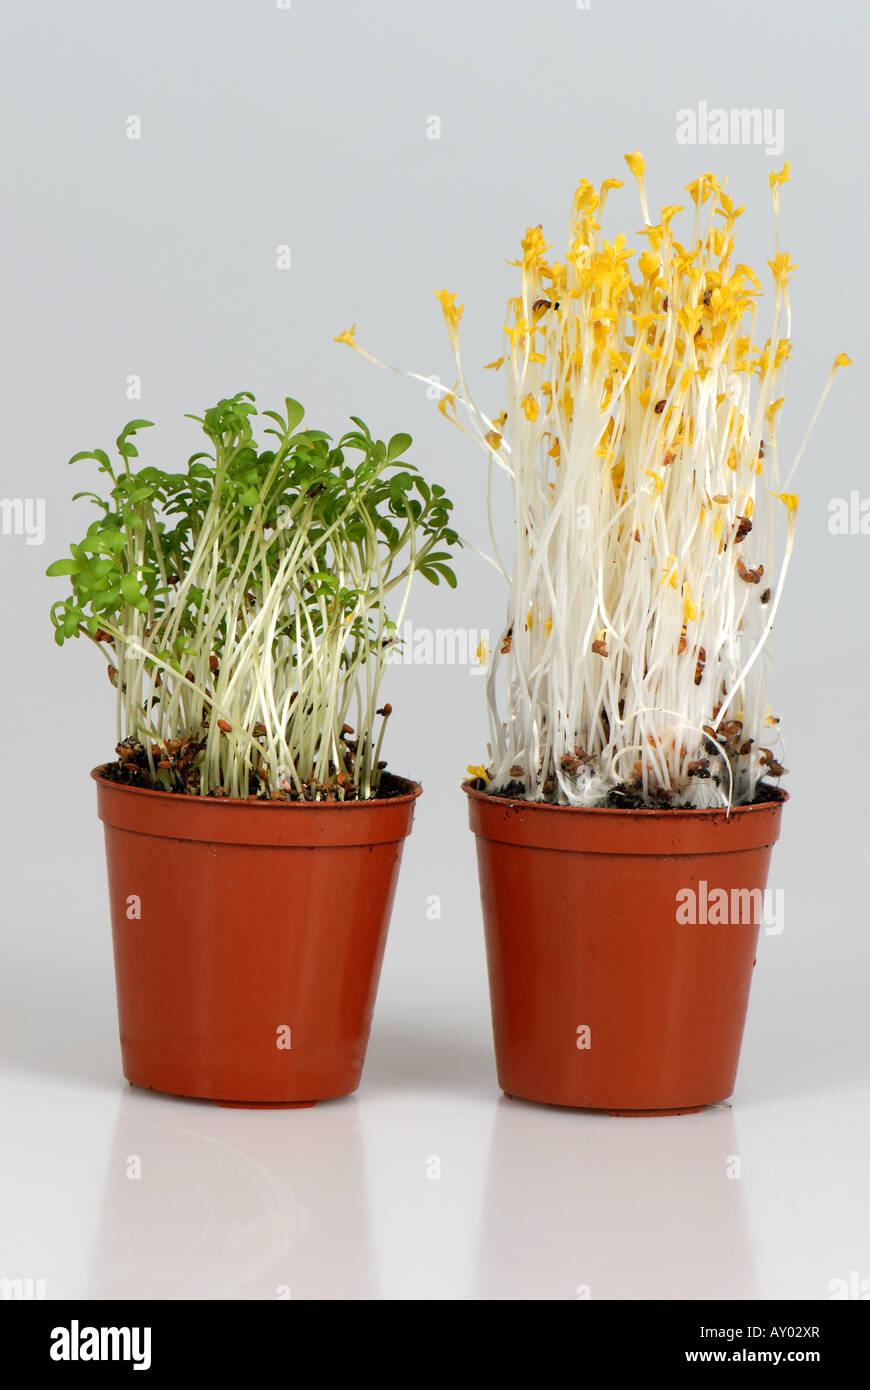 Il crescione piantine cresciute a sinistra in luce normale rispetto a piantine germinate senza luce Foto Stock